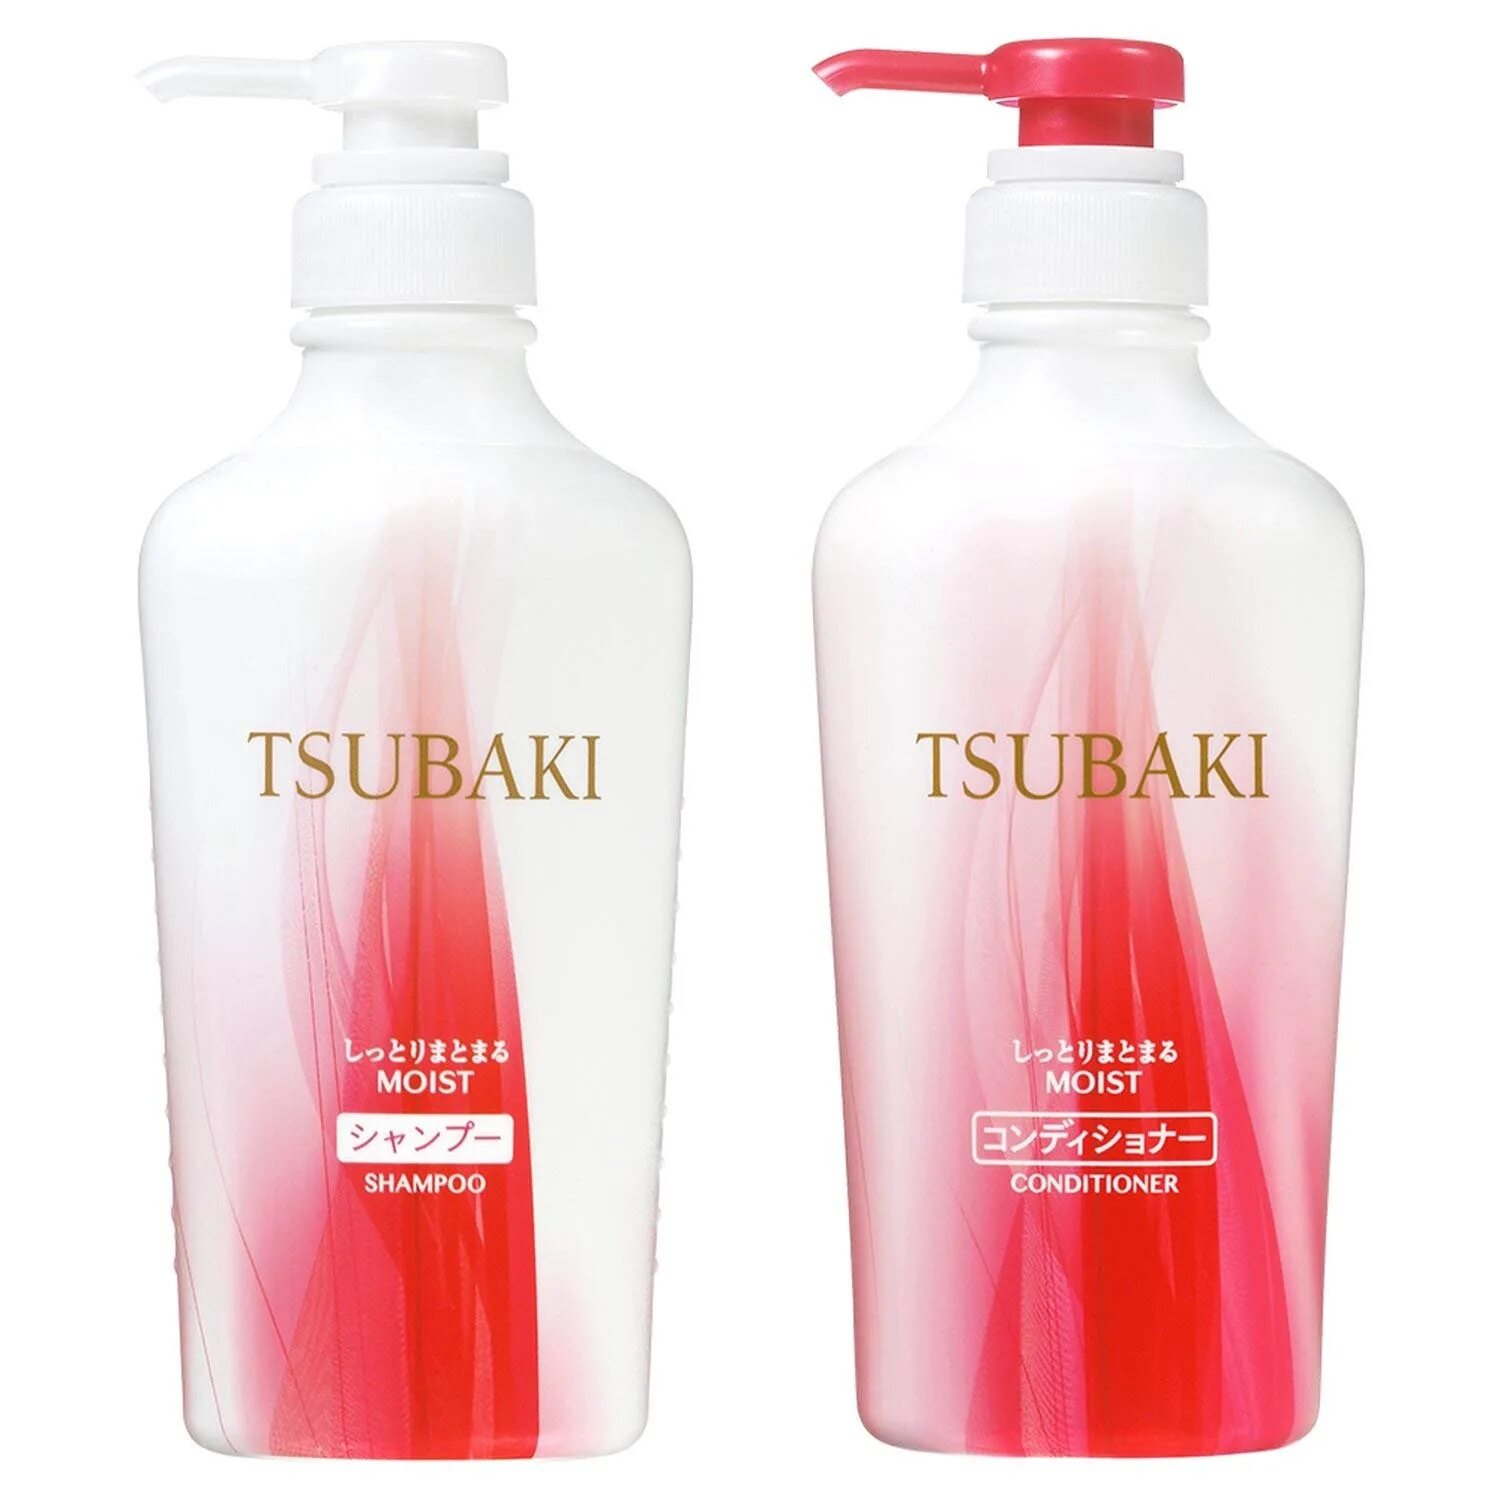 Tsubaki шампунь купить. Шампунь Shiseido Tsubaki. Shiseido Tsubaki Conditioner. Tsubaki moist шампунь. Shiseido Tsubaki Shampoo для поврежденных волос.